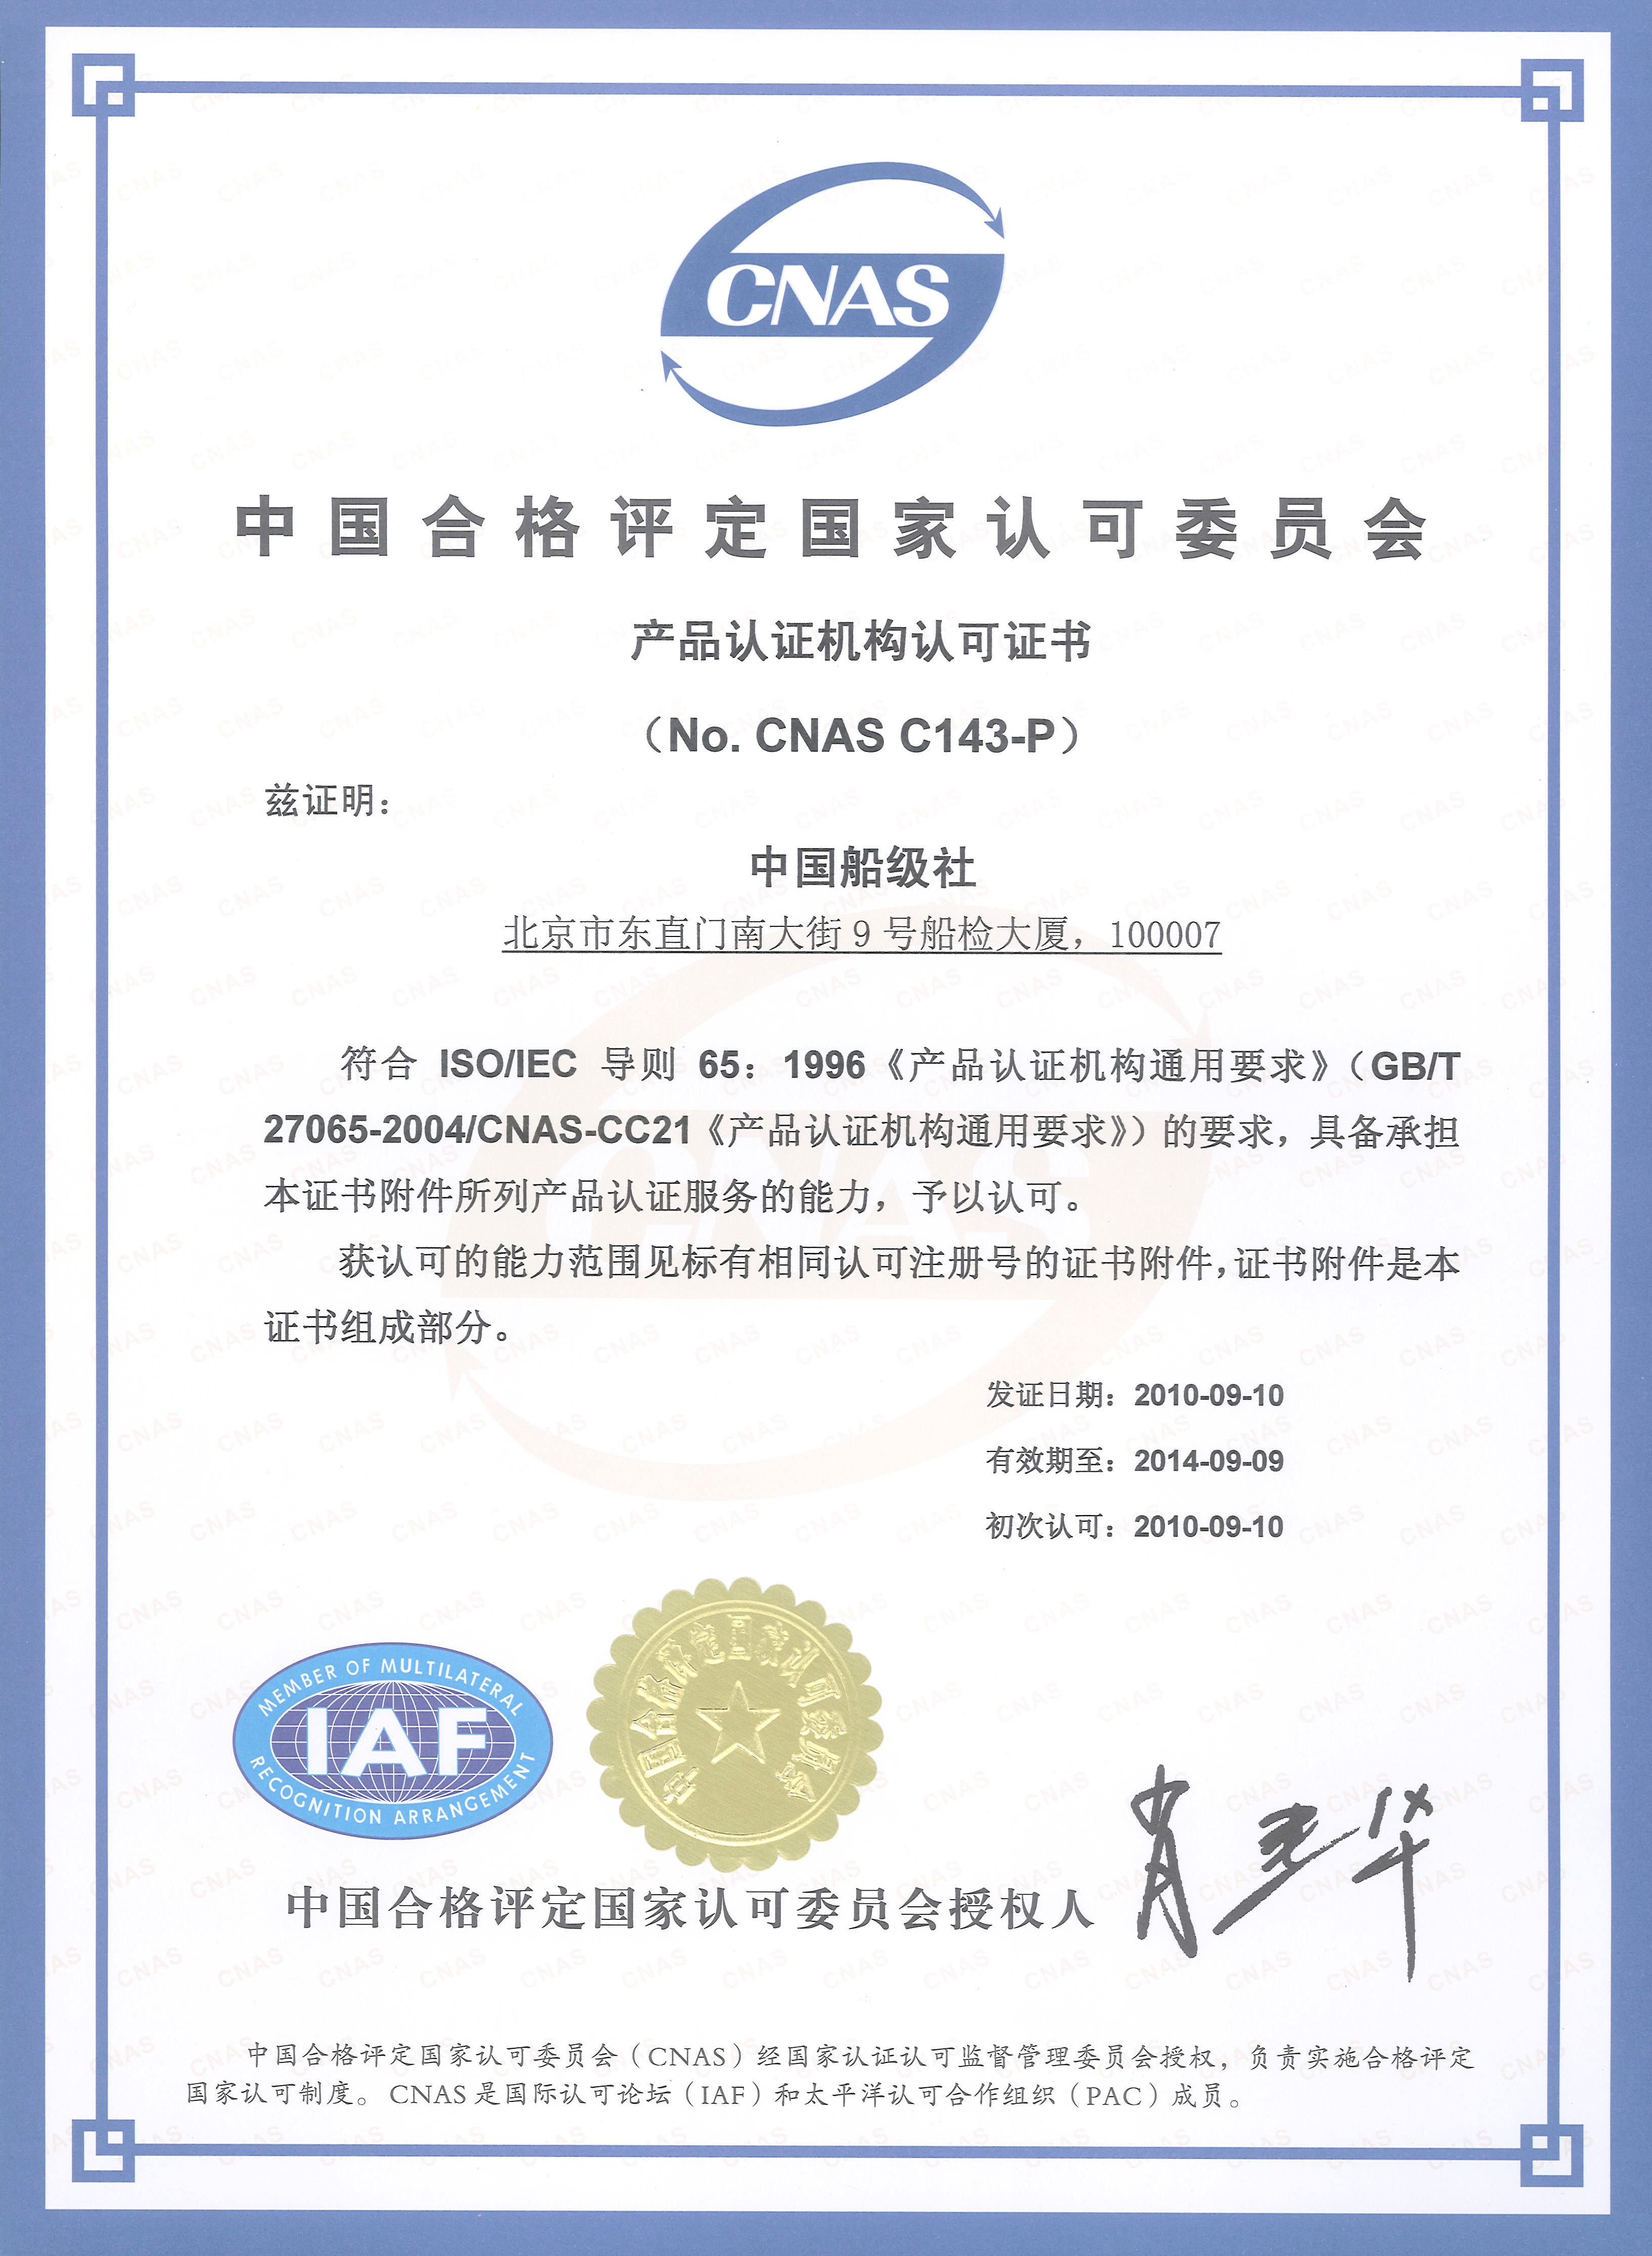 2010年9月10日，公司产品认证能力获得CNAS认可，成为国内首家获得认可的风电产品认证机构。.jpg